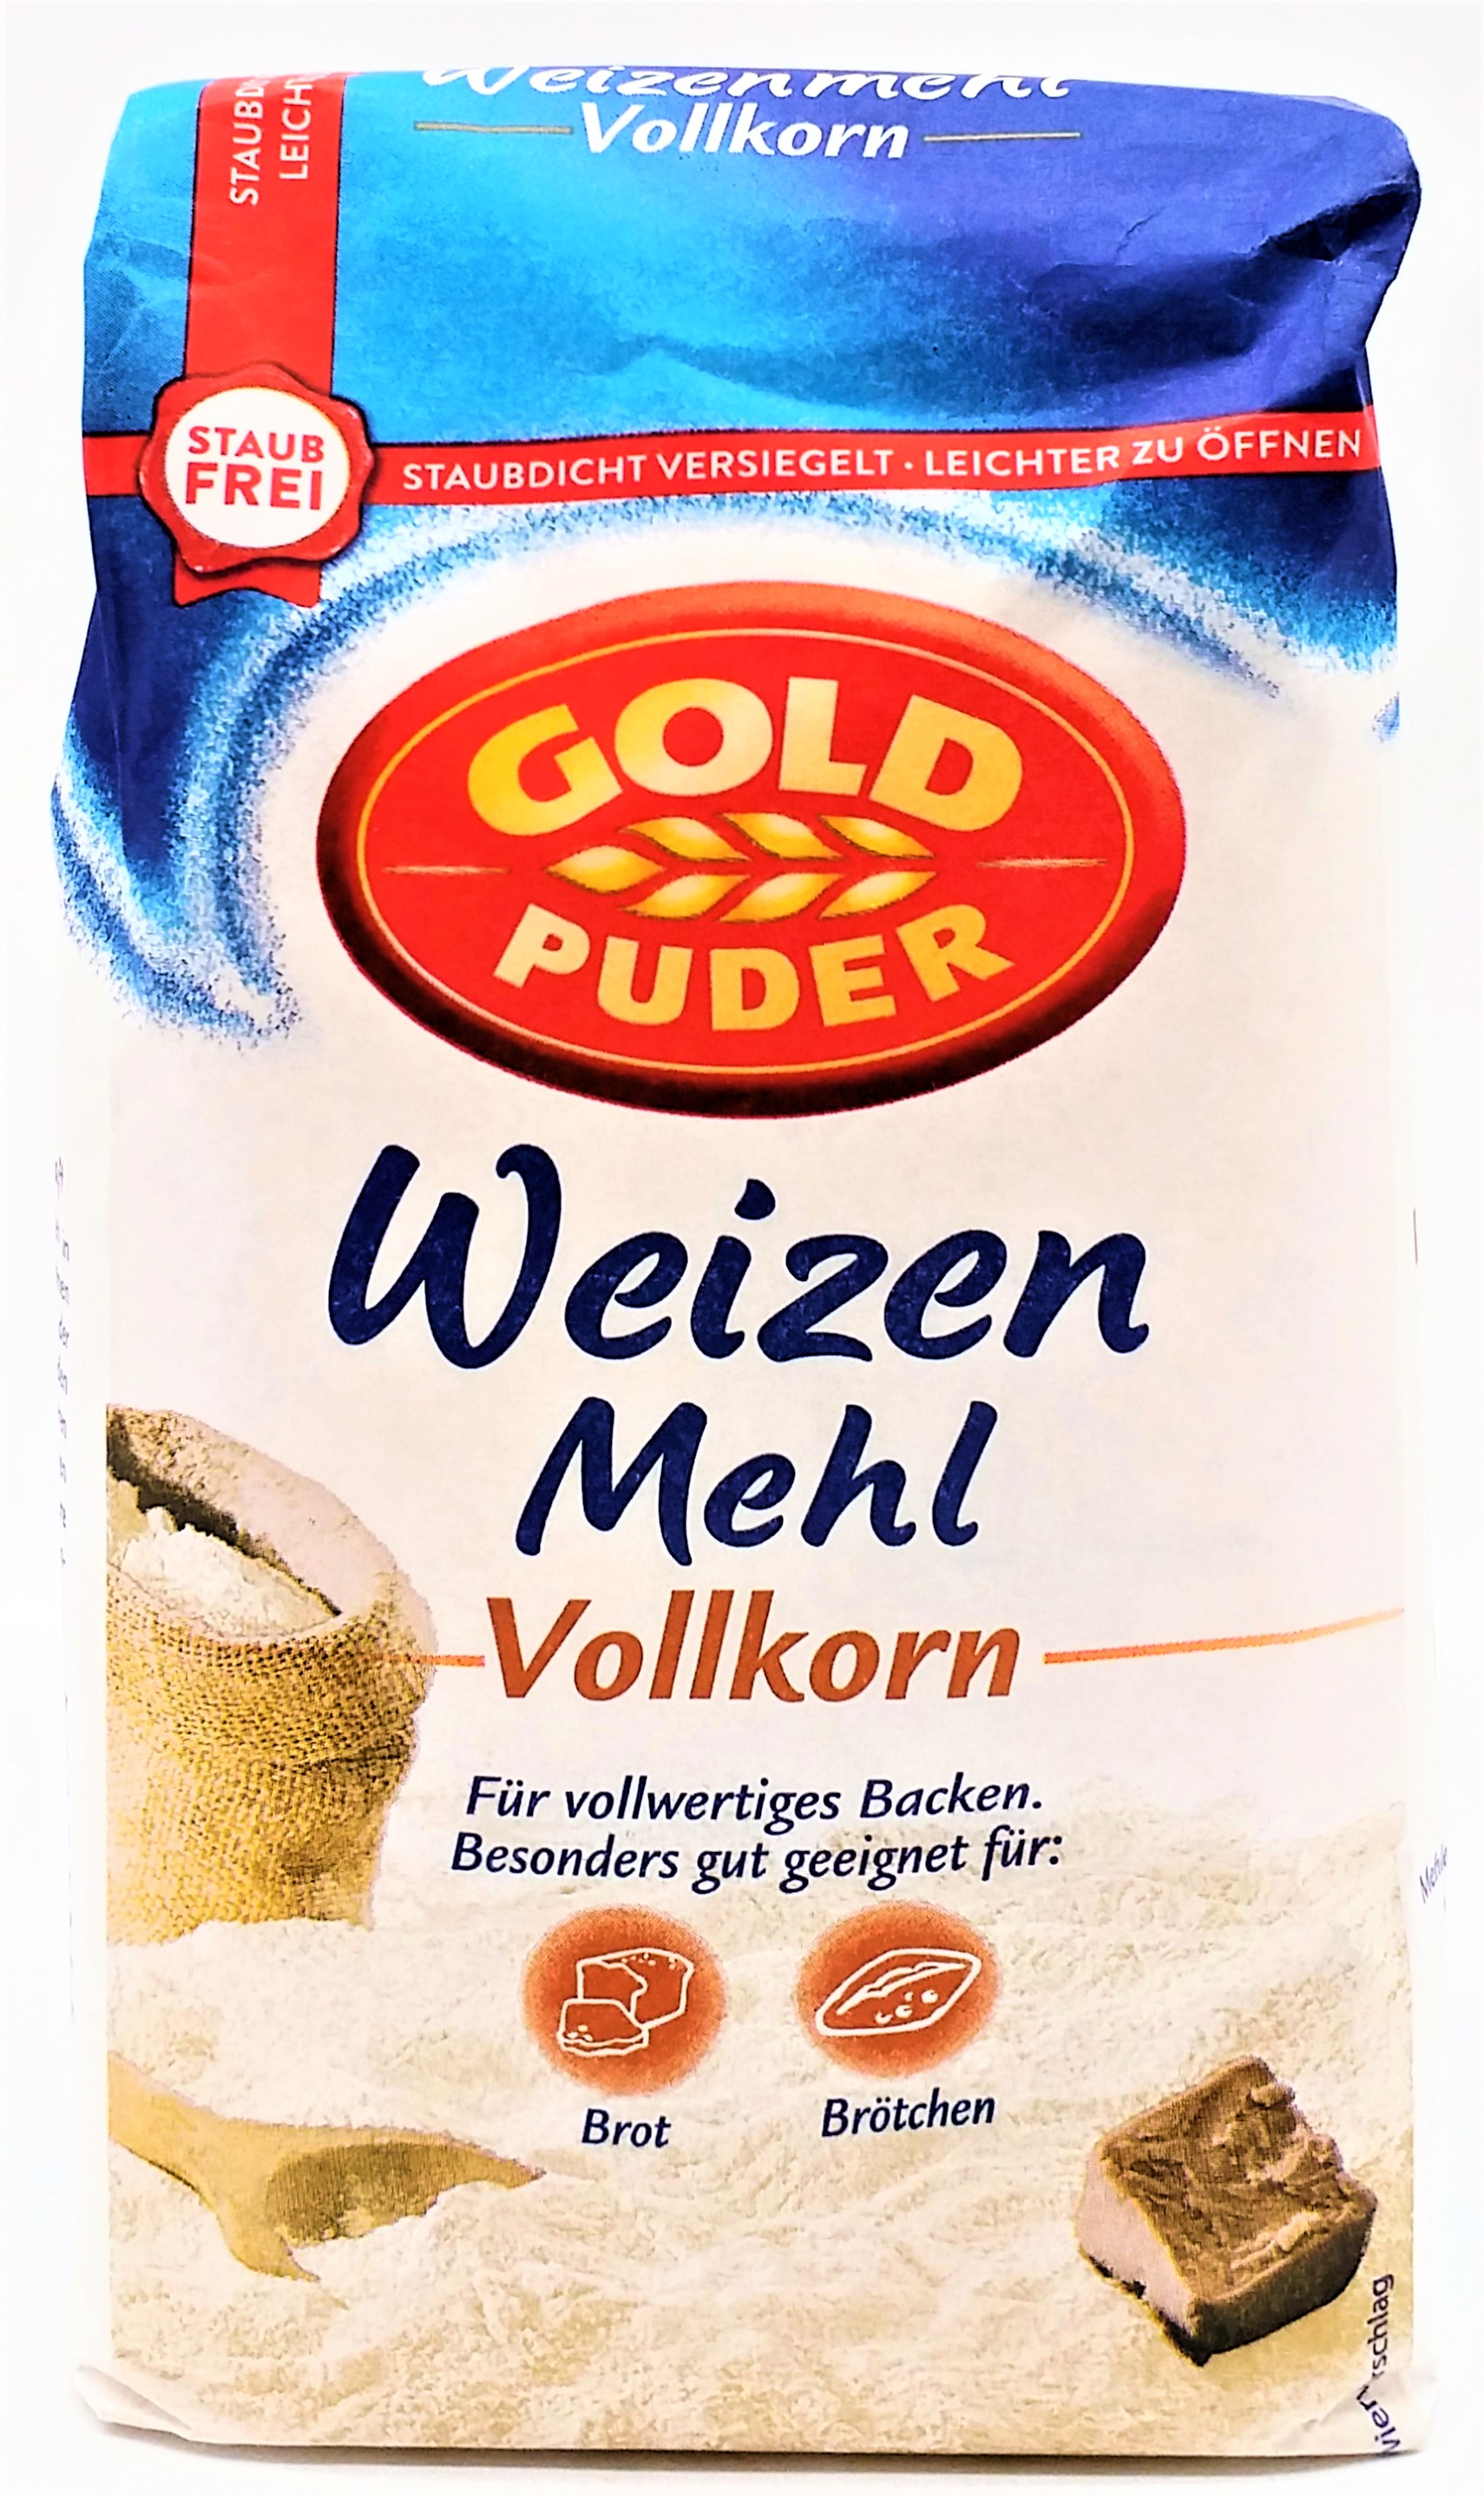 Goldpuder Vollkorn-Weizen-Mehl 1kg